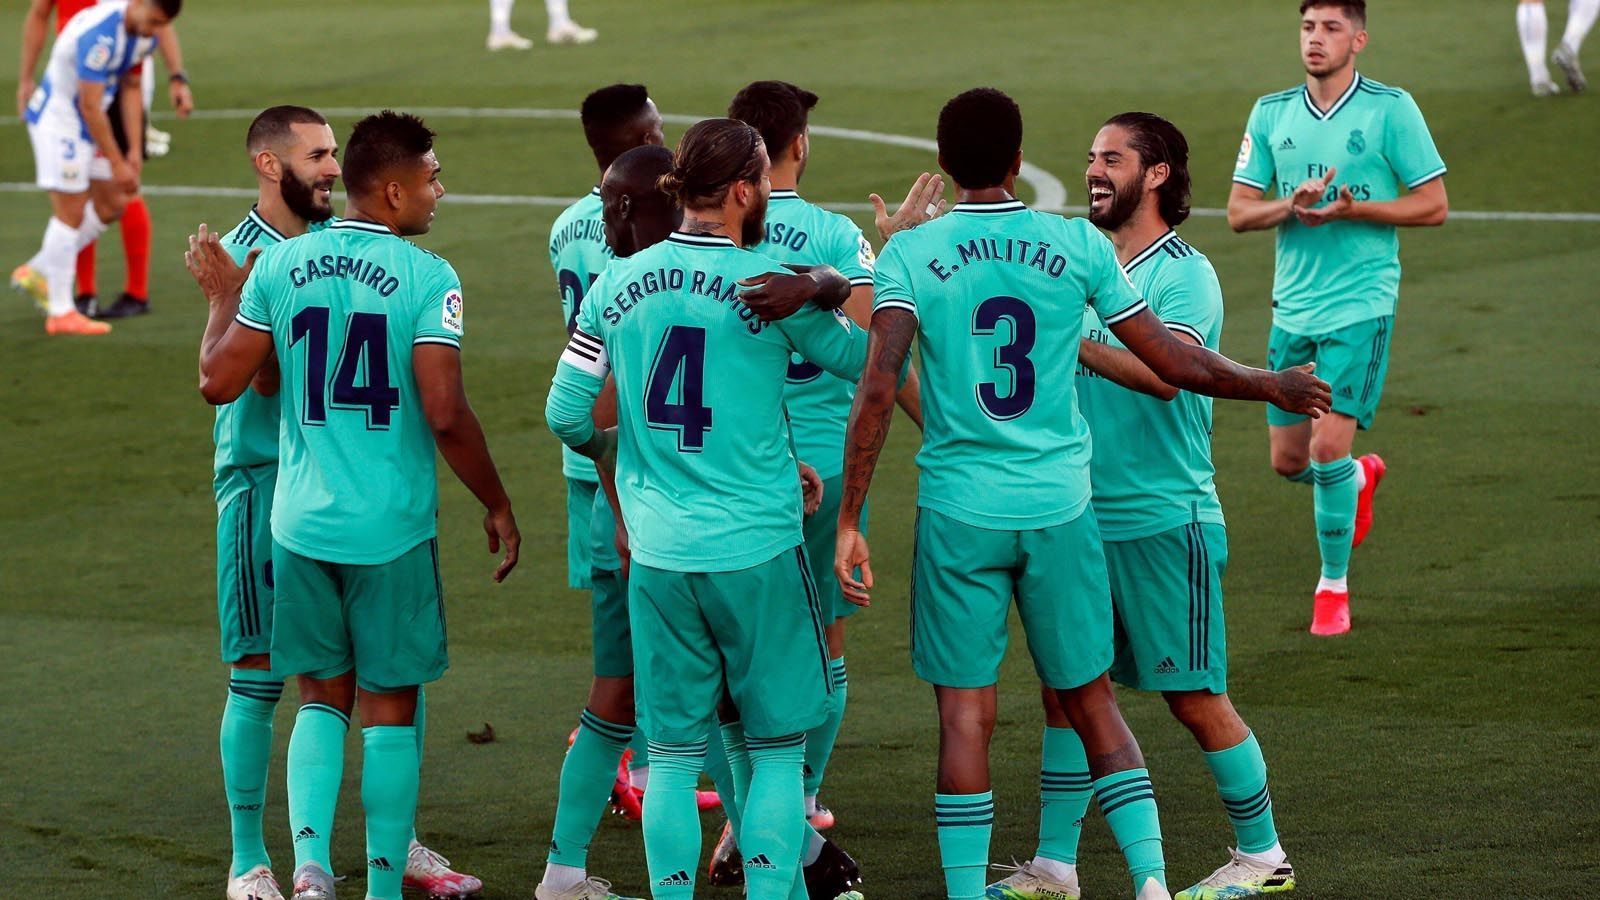 
                <strong>Real Madrid</strong><br>
                Mit einer abgeklärten Leistung sicherten sich die Königlichen nach dem Restart die Meisterschaft in La Liga, ohne dabei aber spielerisch zu glänzen. Zudem wiegt der 1:2-Rückstand aus dem Hinspiel gegen ManCity schwer. Abseits des Platzes sorgte vor allem Gareth Bale mit zahlreichen "Mätzchen" für Aufsehen. 
              